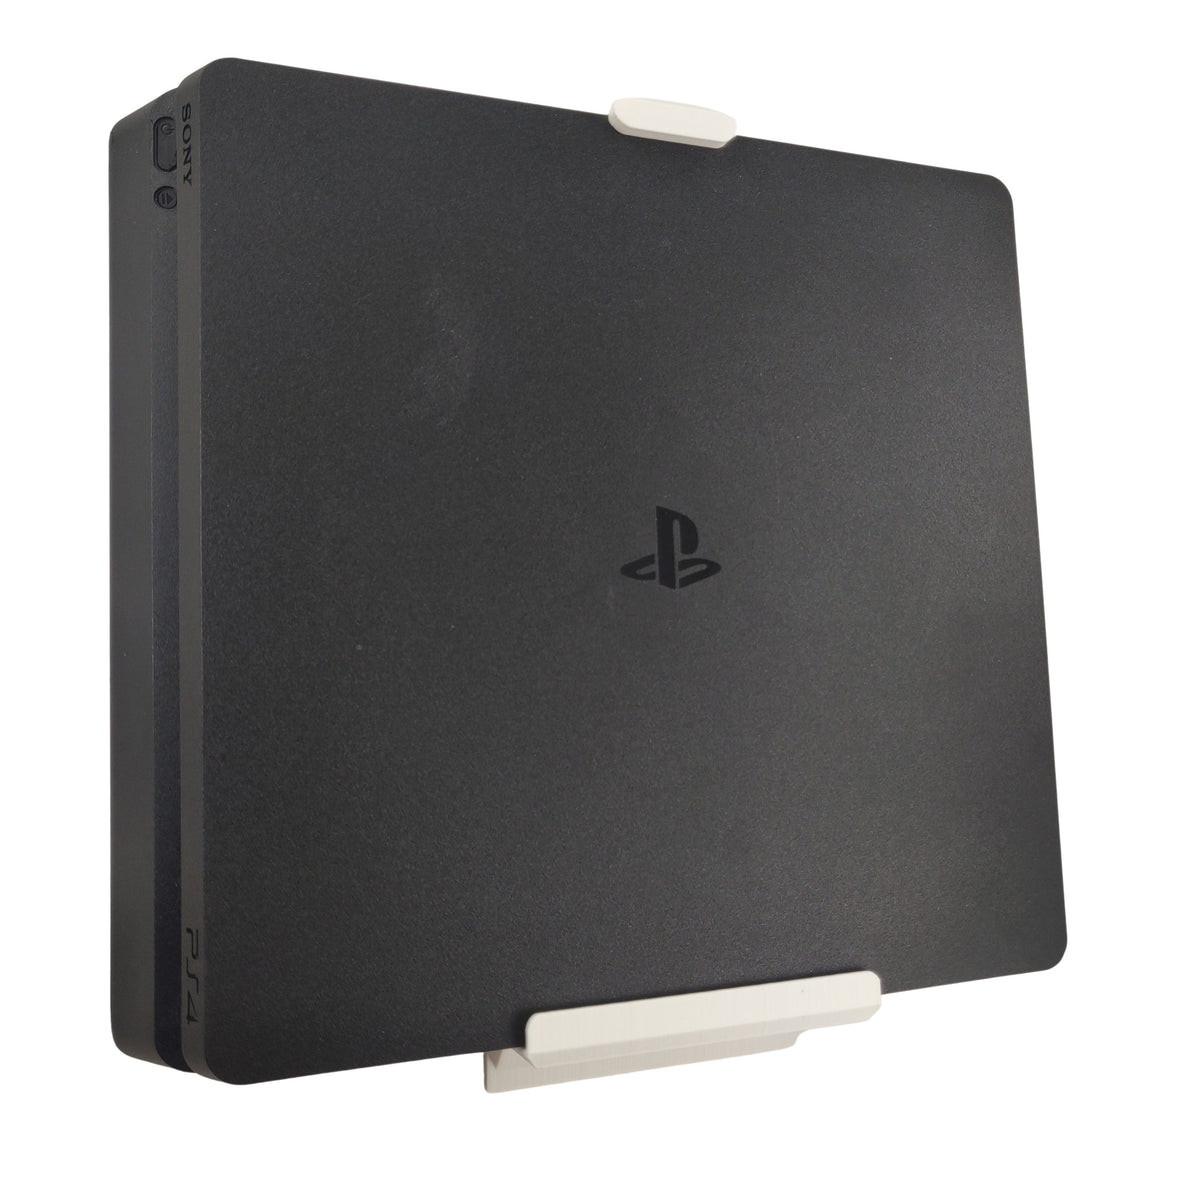 Wandhalterung kompatibel für Ps4 Slim Konsole Sony Playstation 4 Slim